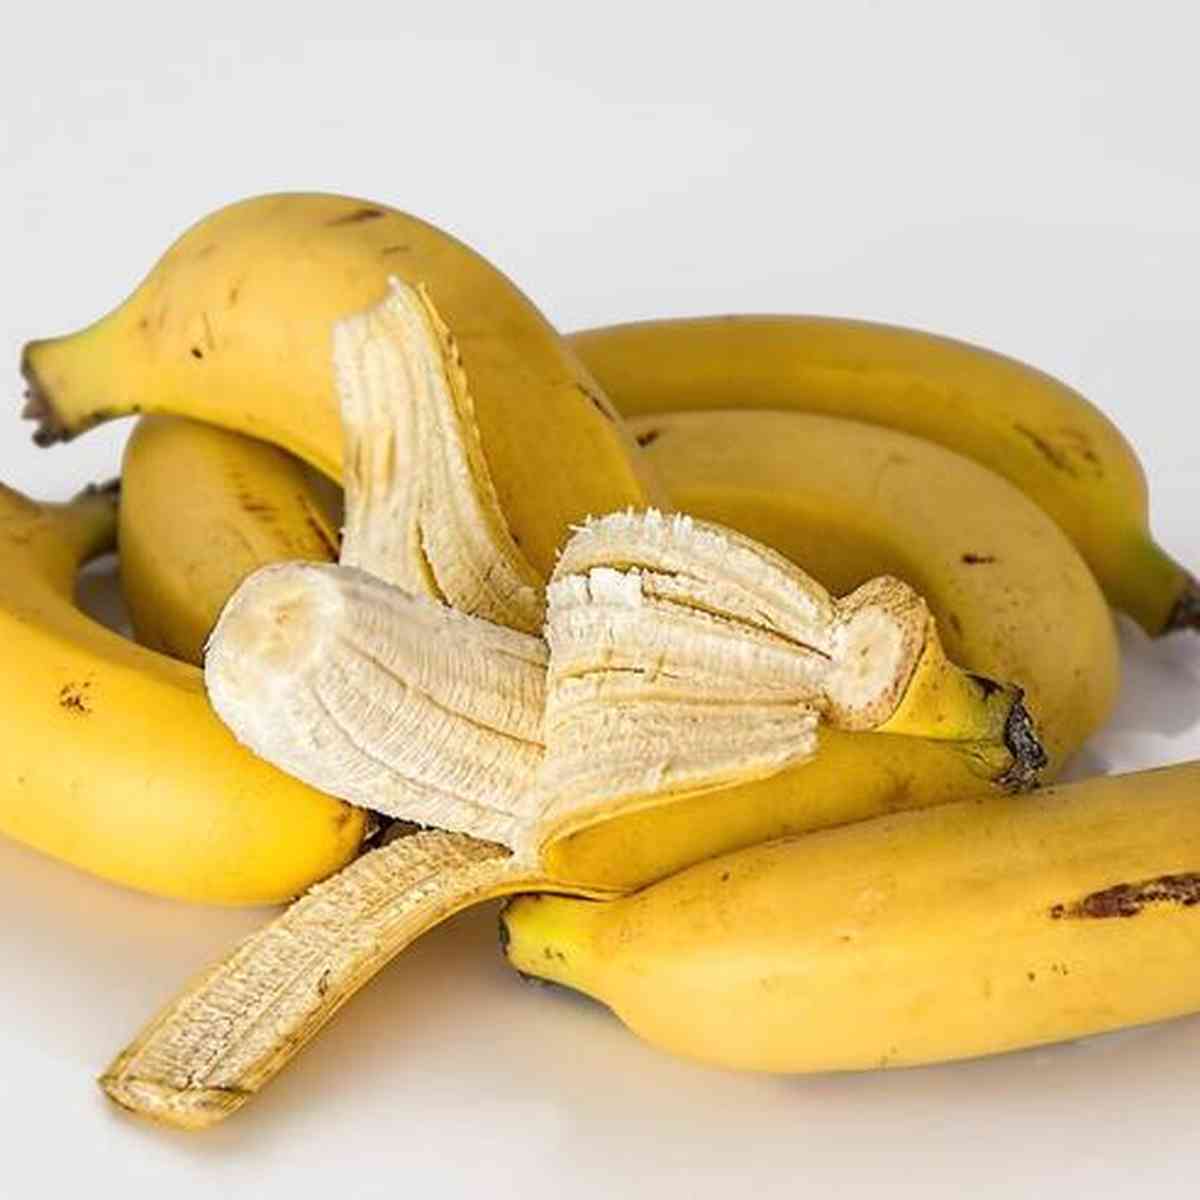 Banana - Bom Princípio Alimentos